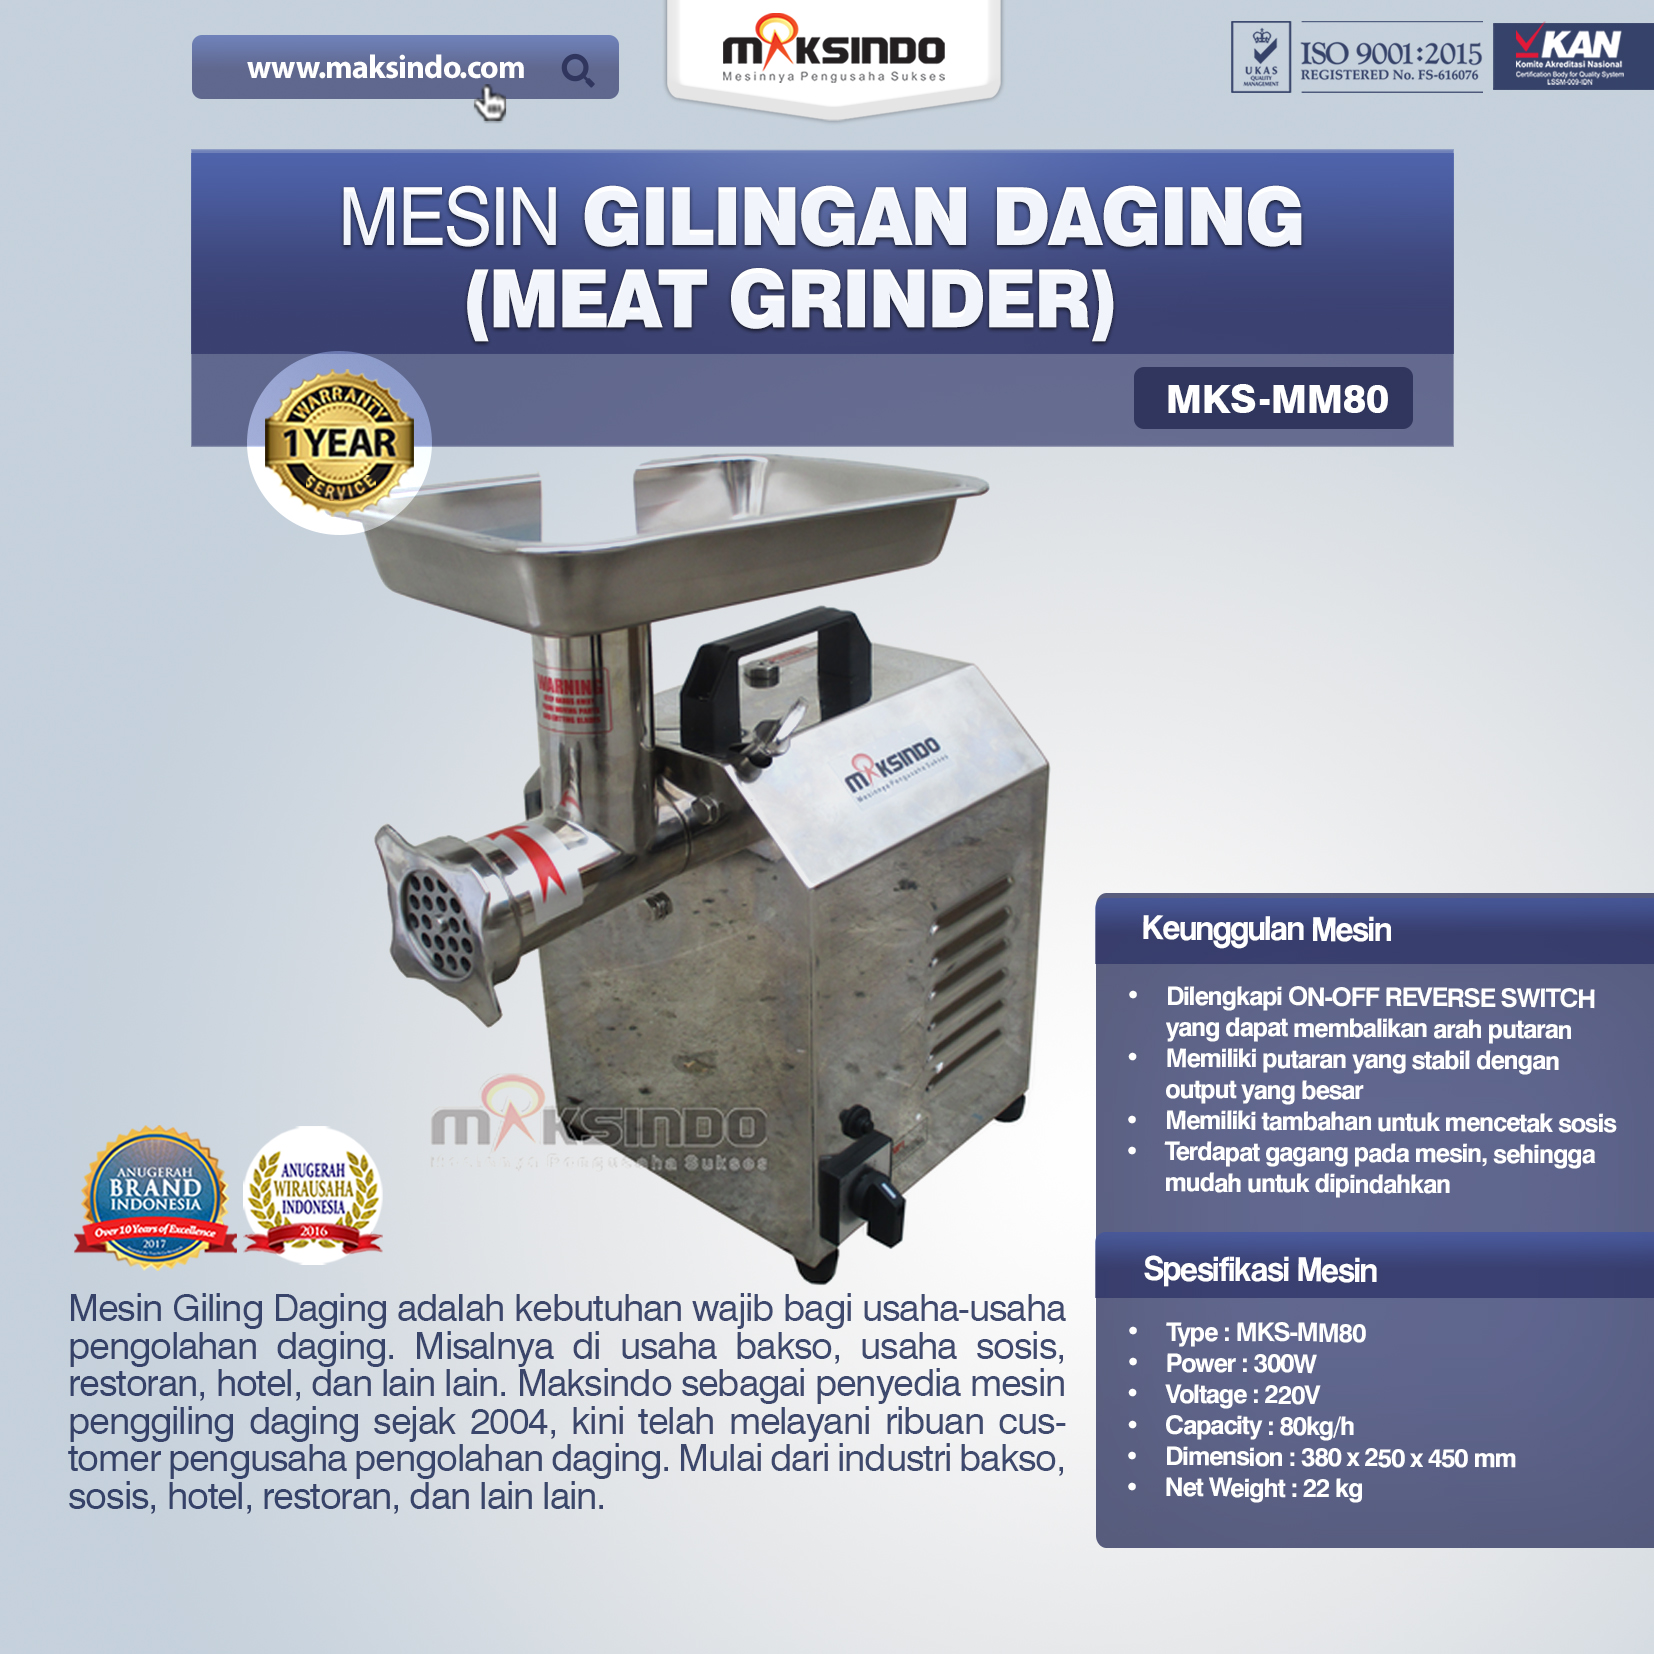 Jual Mesin Meat Grinder MKS-MM80 di Malang